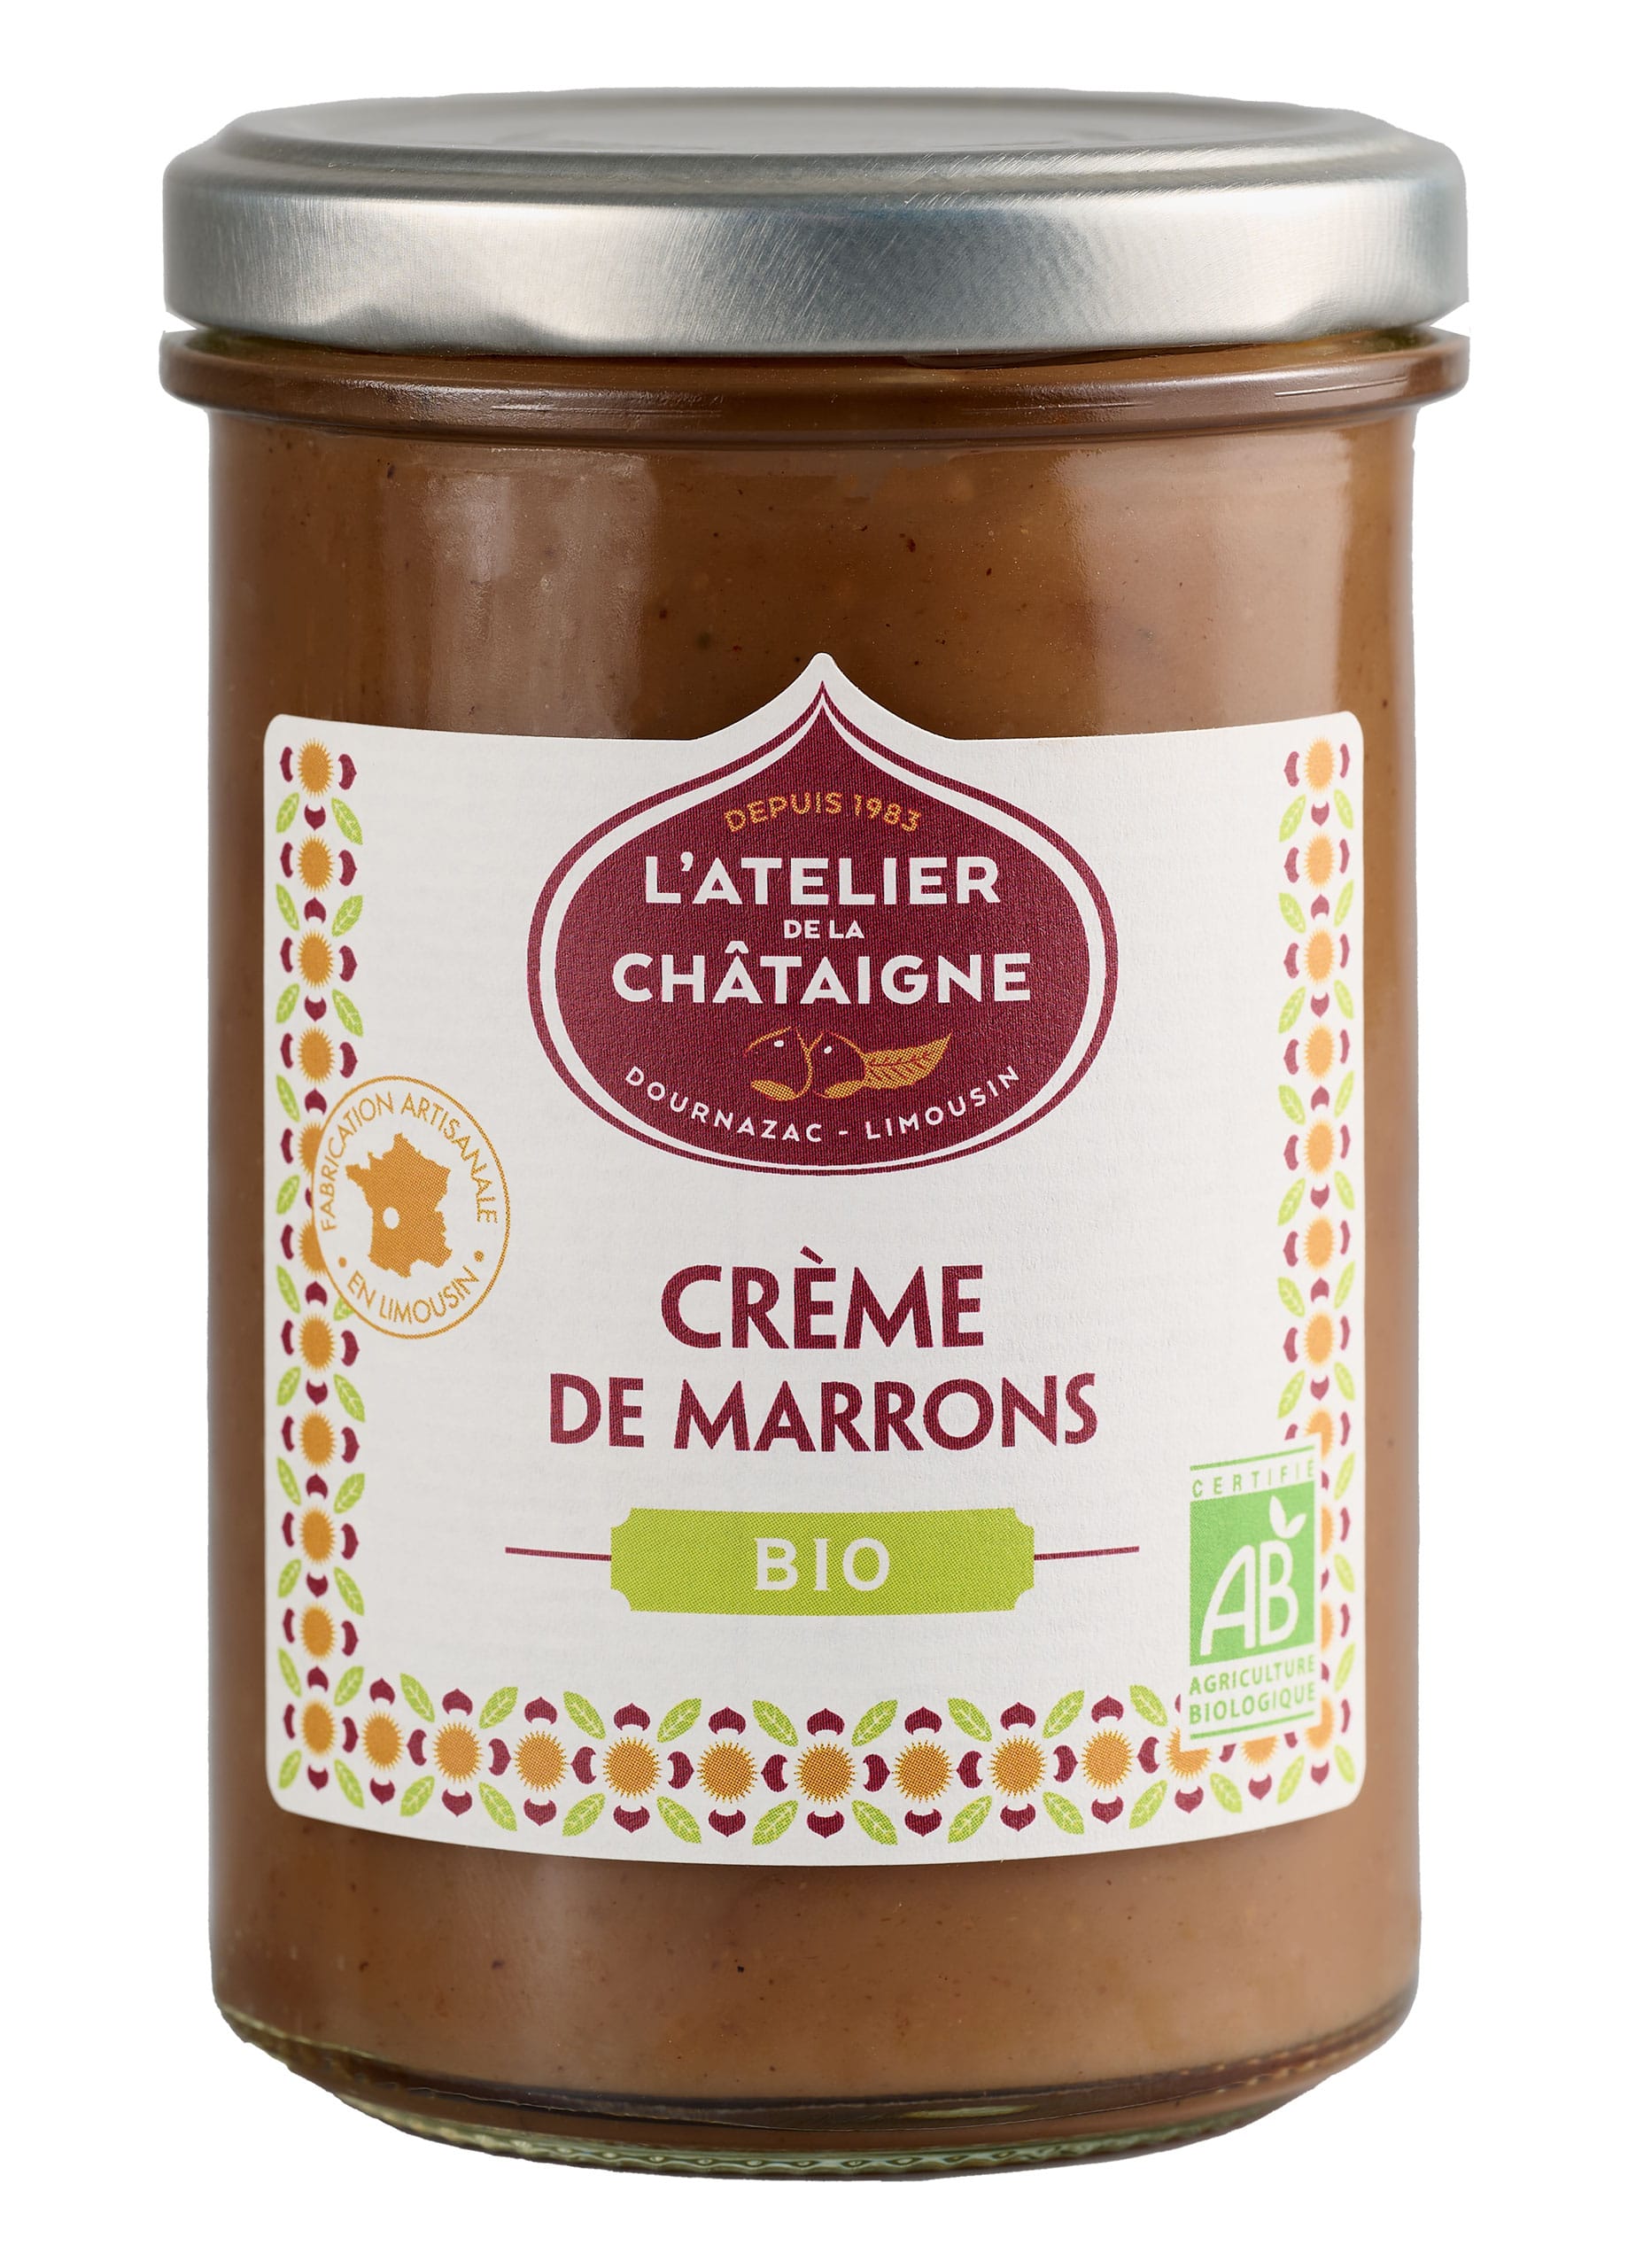 Crème de marrons Bio | L'Atelier de la châtaigne